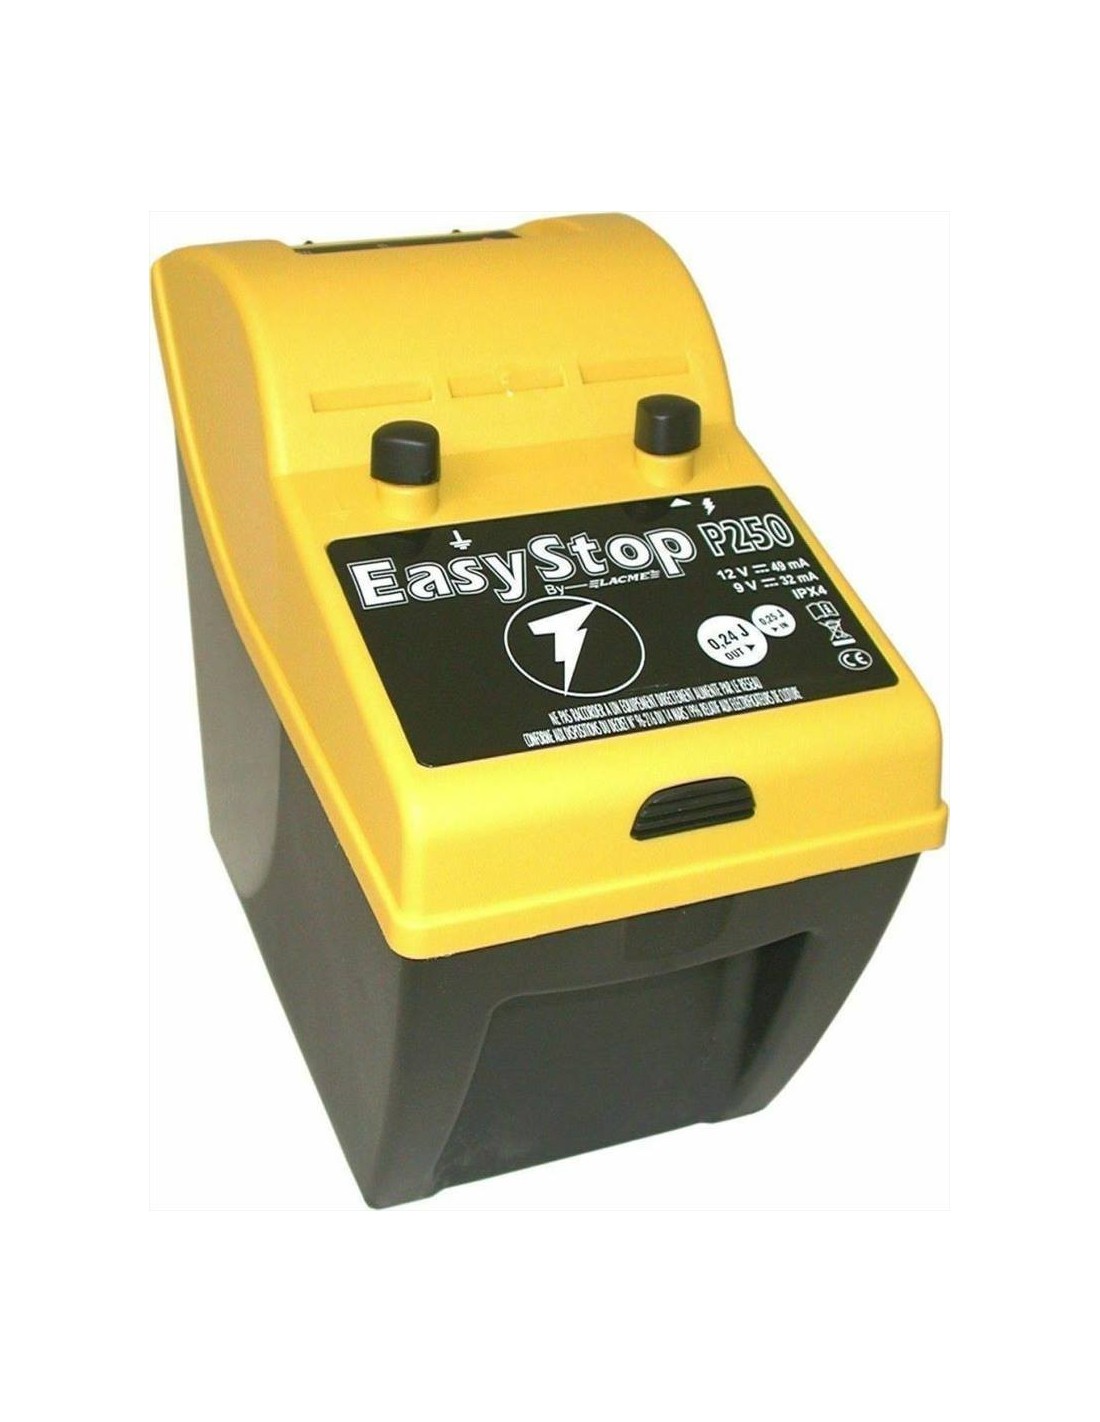 Lacme EASYSTOP P250 Elettrificatore per recinto elettrico a batteria